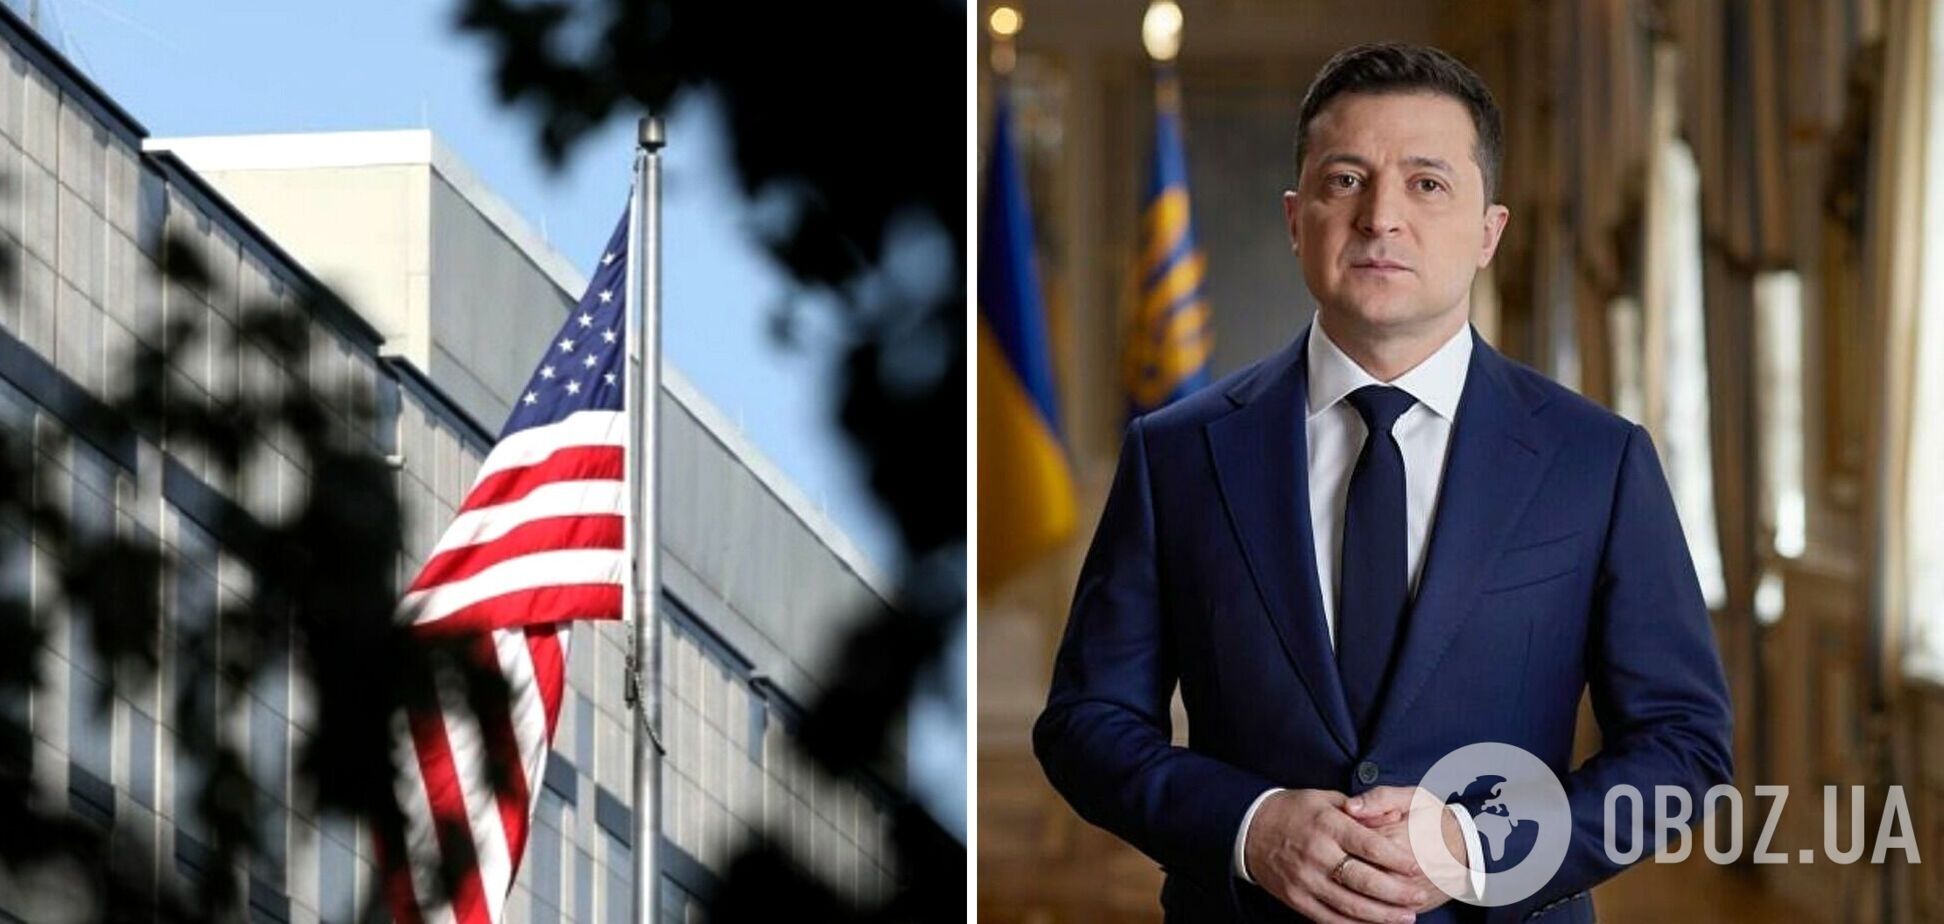 В посольстве США отреагировали на заявления о госперевороте: мы контактируем с властями Украины